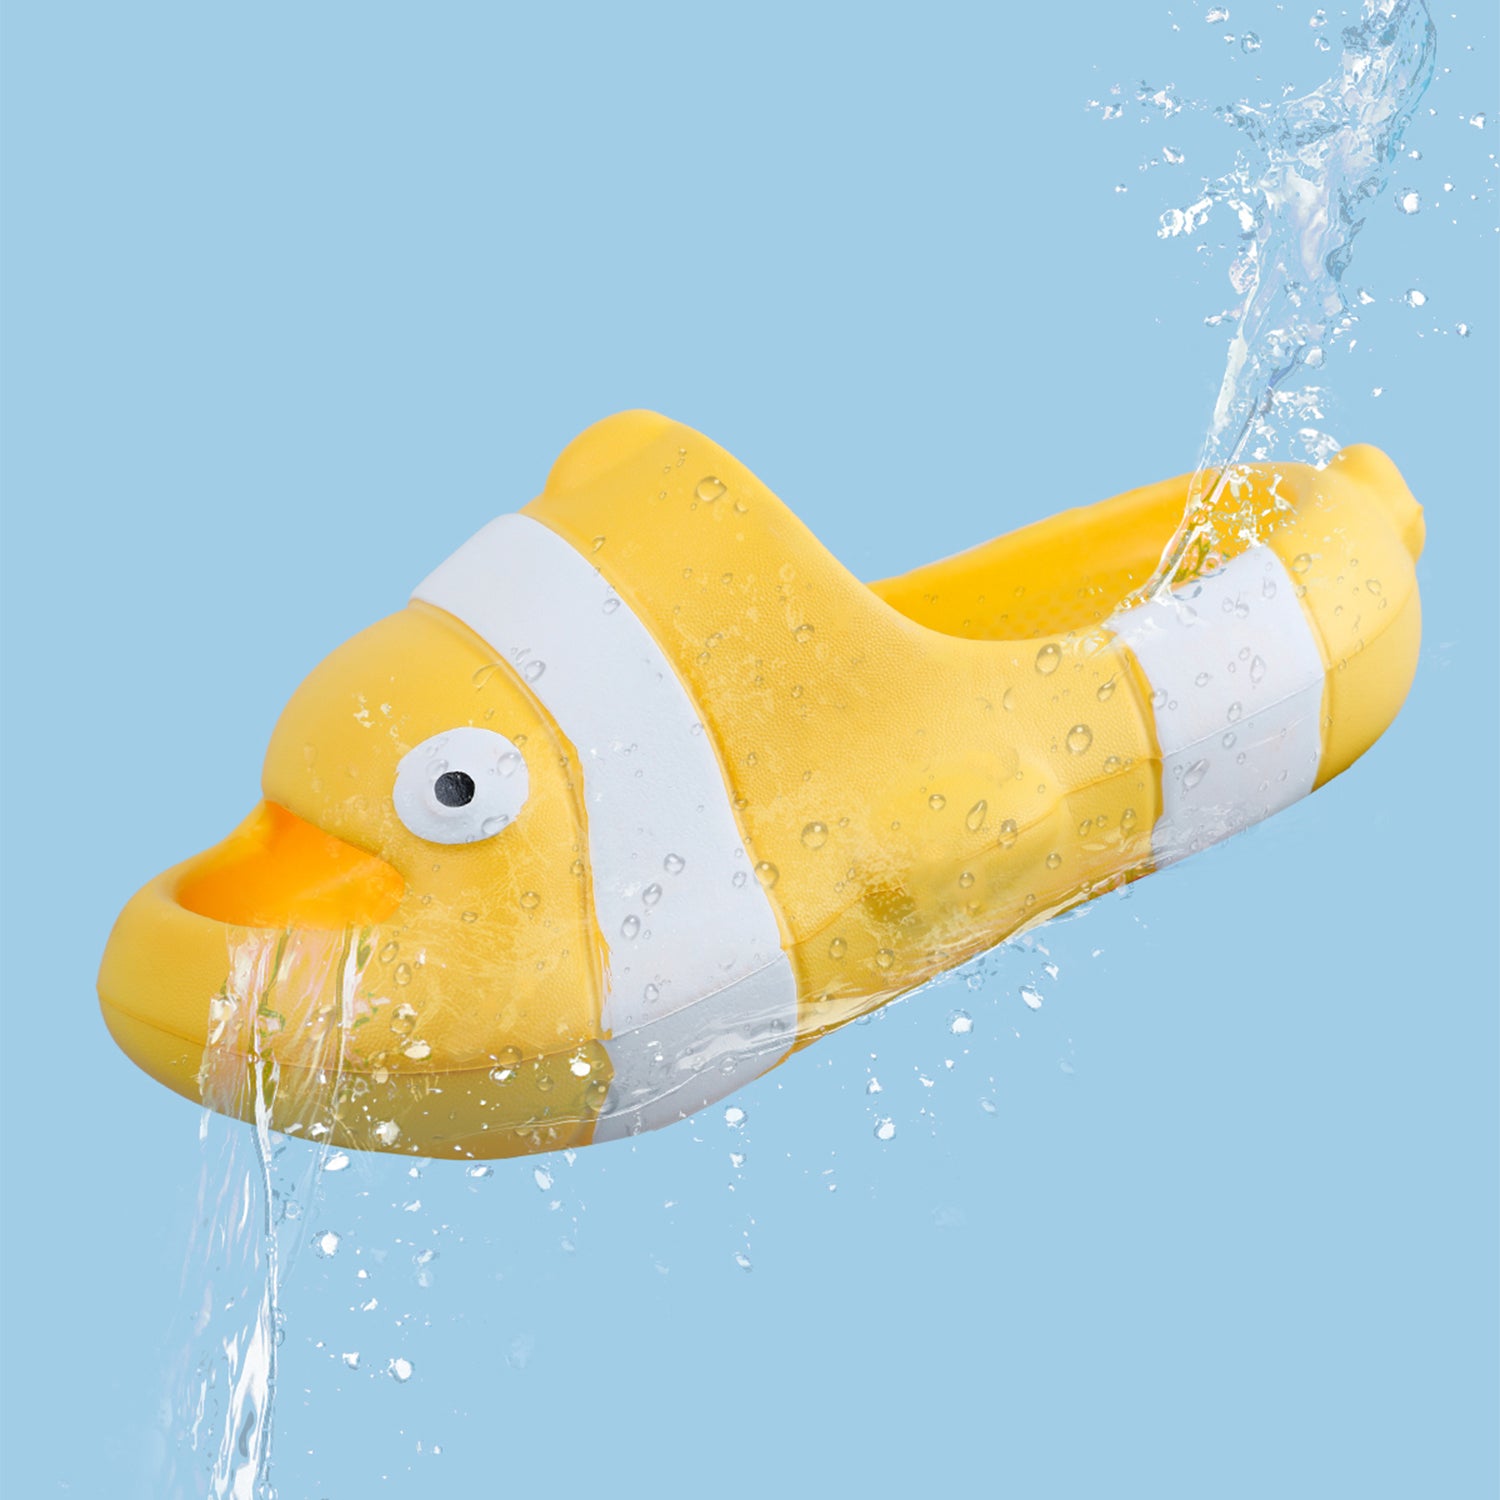 Baby Moo Nemo Waterproof Soft Slippers Anti-Skid Sliders - Yellow - Baby Moo